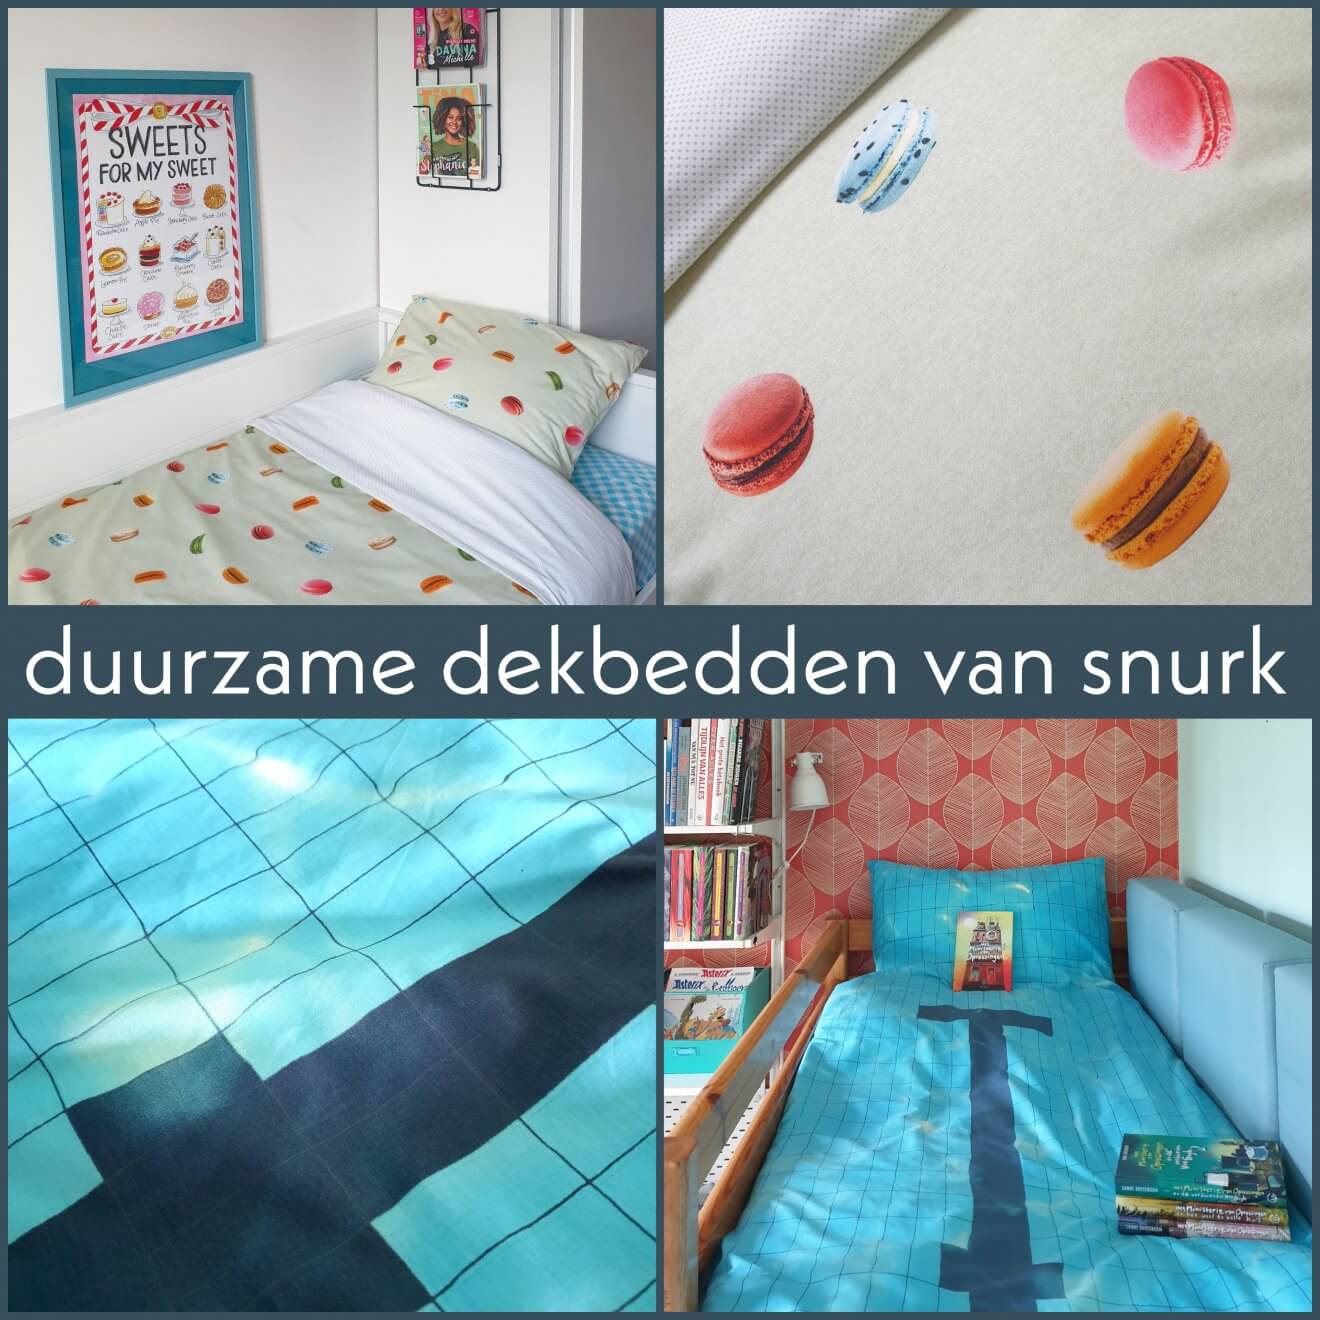 Duurzame dekbedden van Snurk: leuke prints voor kinderen en tieners. Het Amsterdamse merk Snurk heeft prachtige dekbedden van duurzame materialen. Naast prints voor jongere kinderen, hebben ze ook leuke dekbedden voor kinderen, tieners en volwassenen. Ik laat je hier onze favorieten zien. 